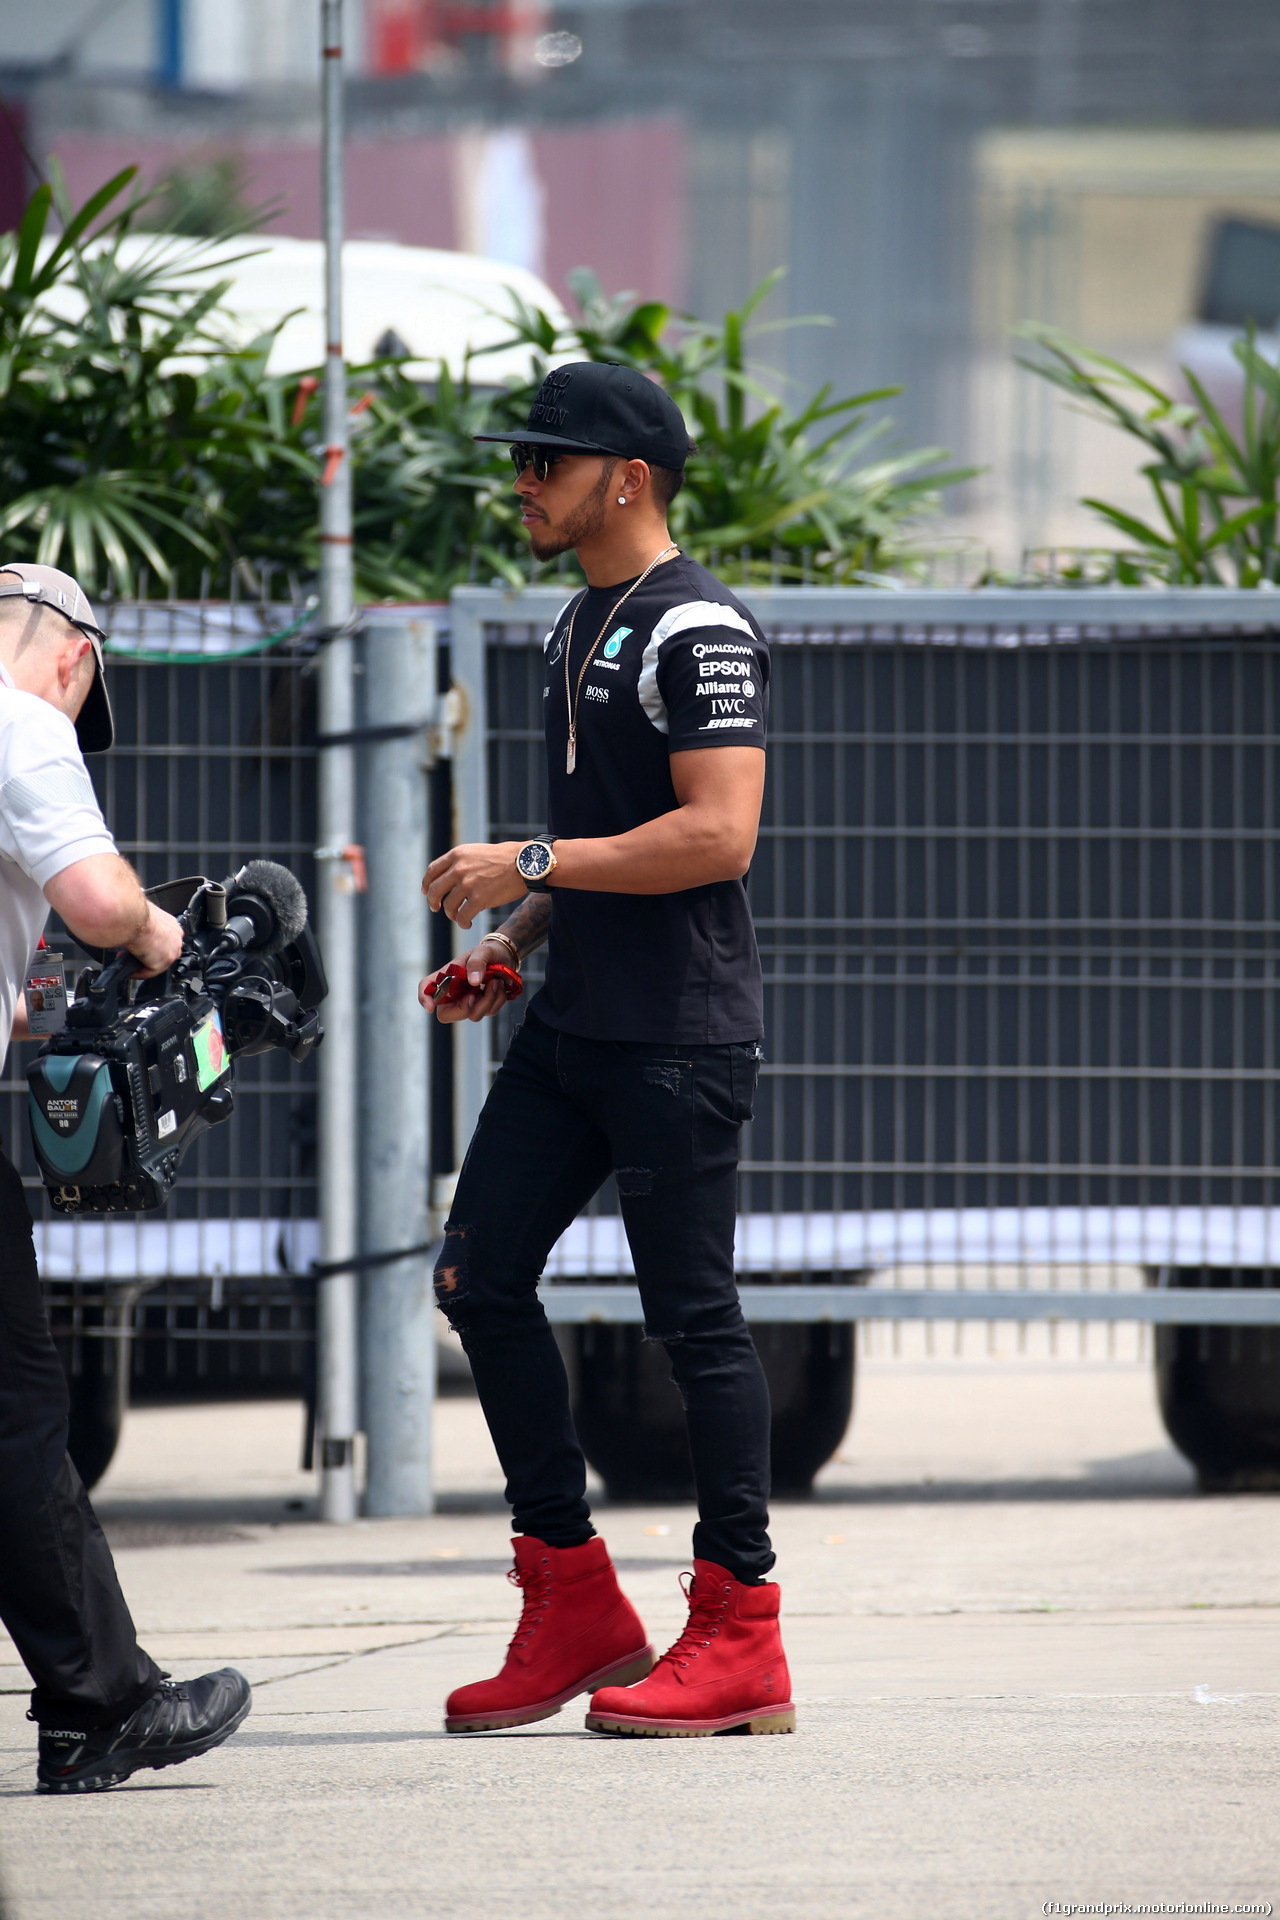 GP CINA, 14.04.2016 - Lewis Hamilton (GBR) Mercedes AMG F1 W07 Hybrid